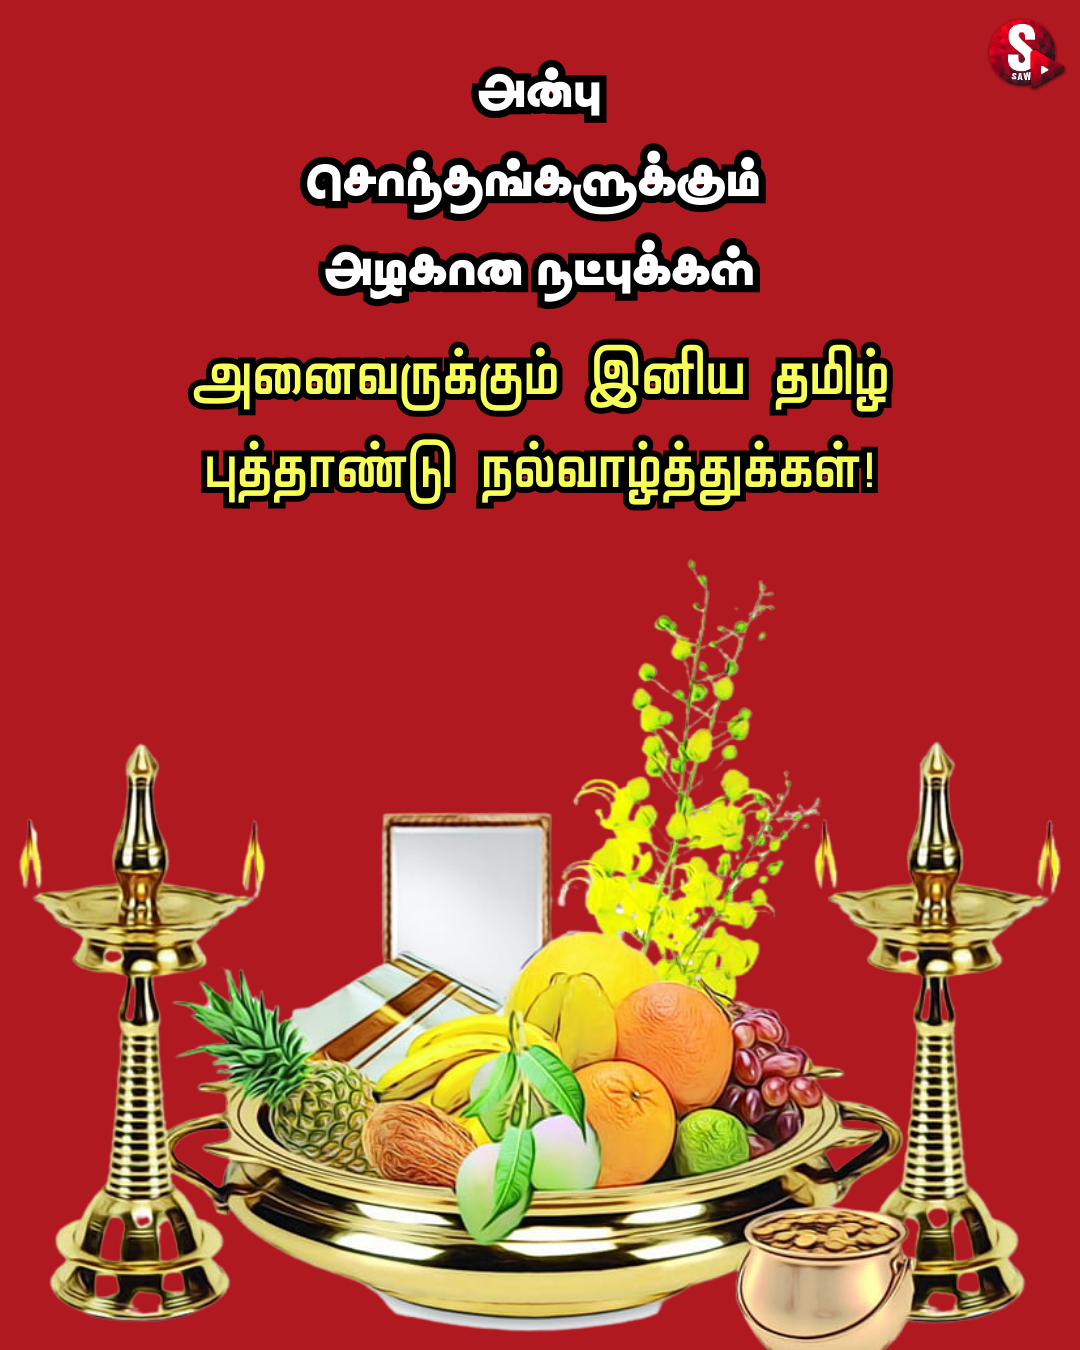 தமிழ் புத்தாண்டு நல்வாழ்த்துக்கள் 2023 Happy Tamil New Year 2023